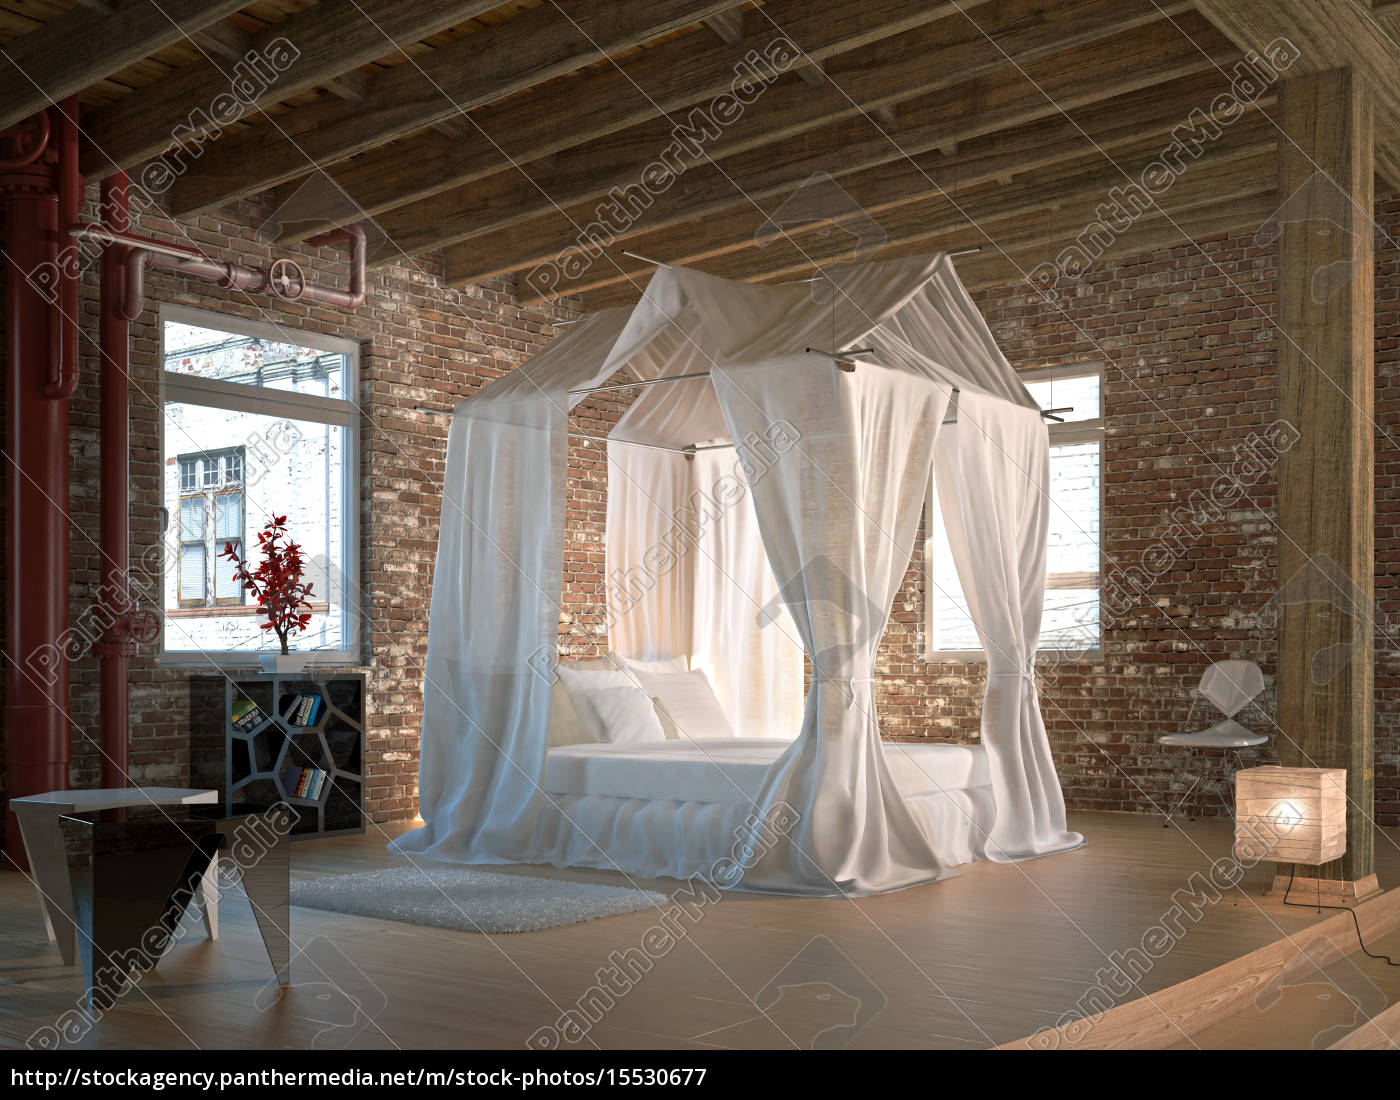 Lizenzfreies Bild 8 - luxus loft schlafzimmer mit